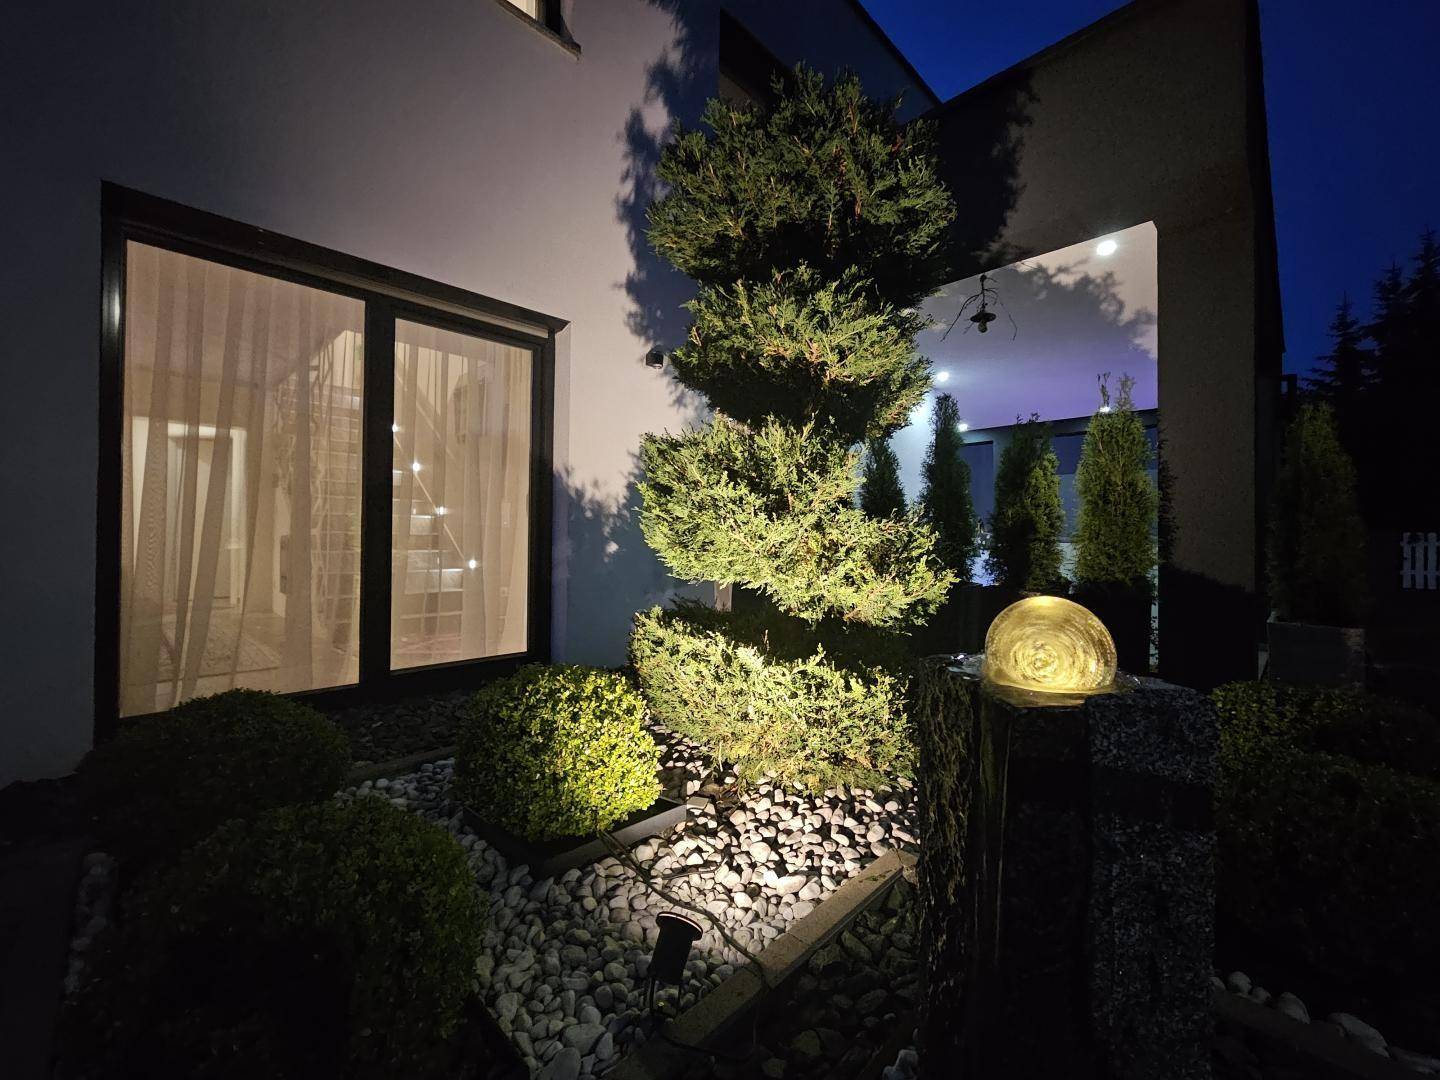 Gartendetail nachts - Brunnen und Beleuchtung